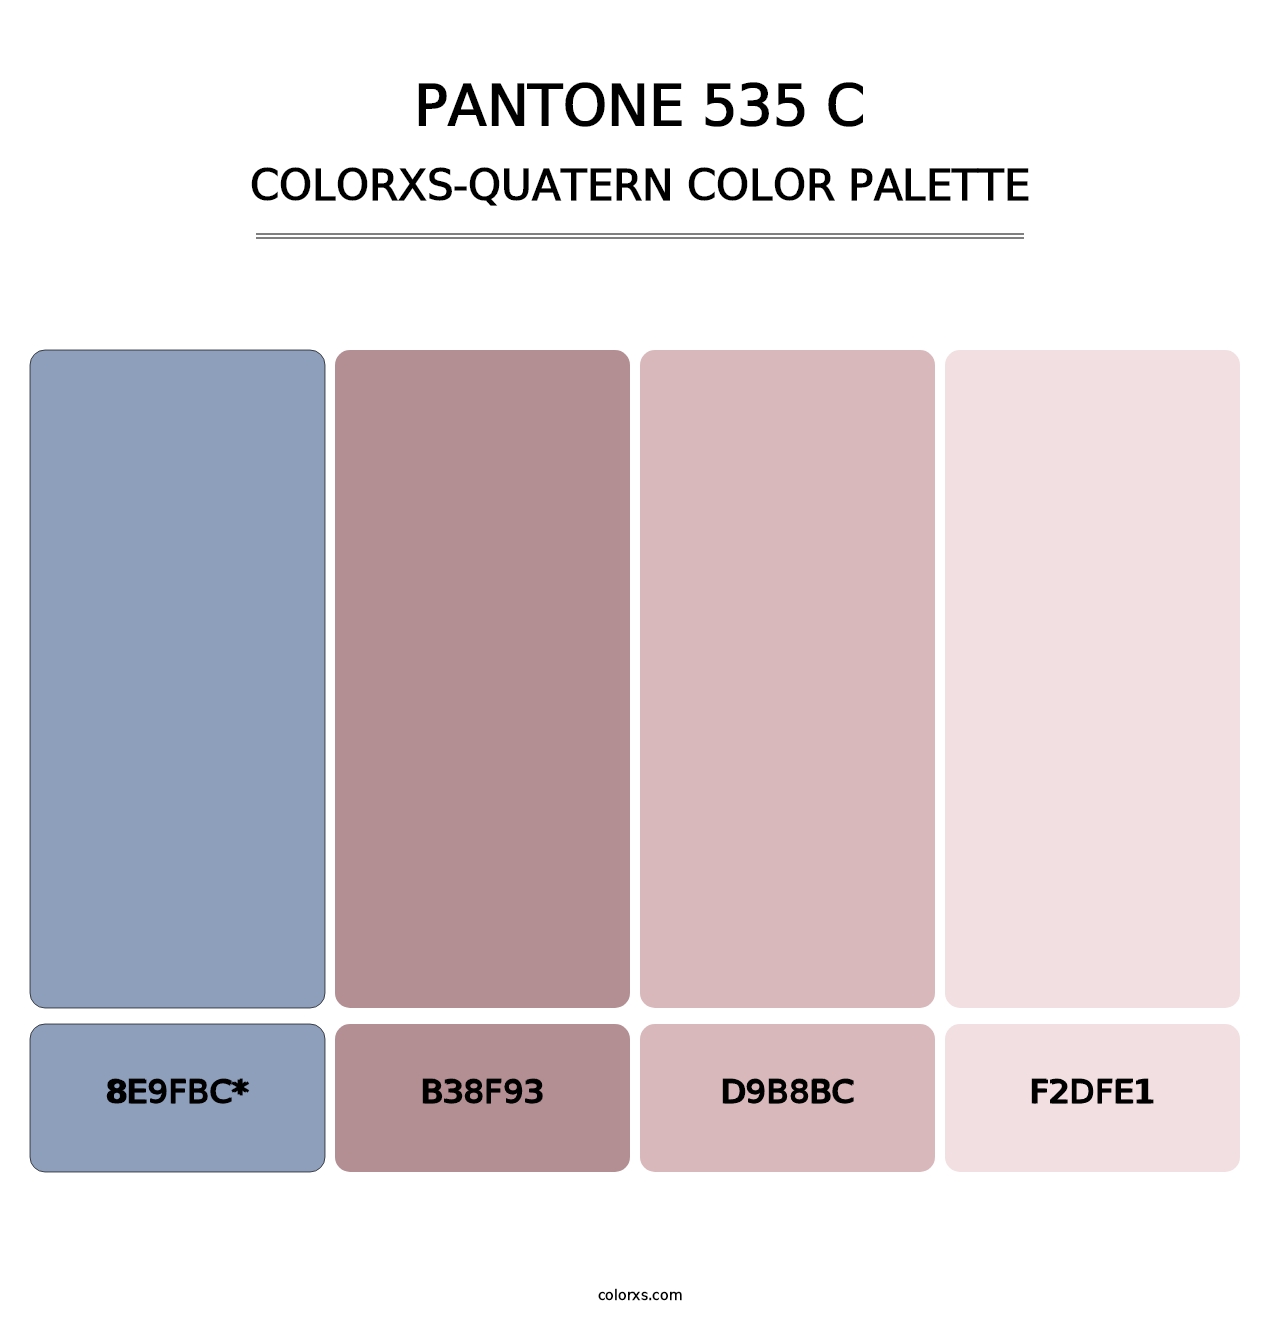 PANTONE 535 C - Colorxs Quatern Palette